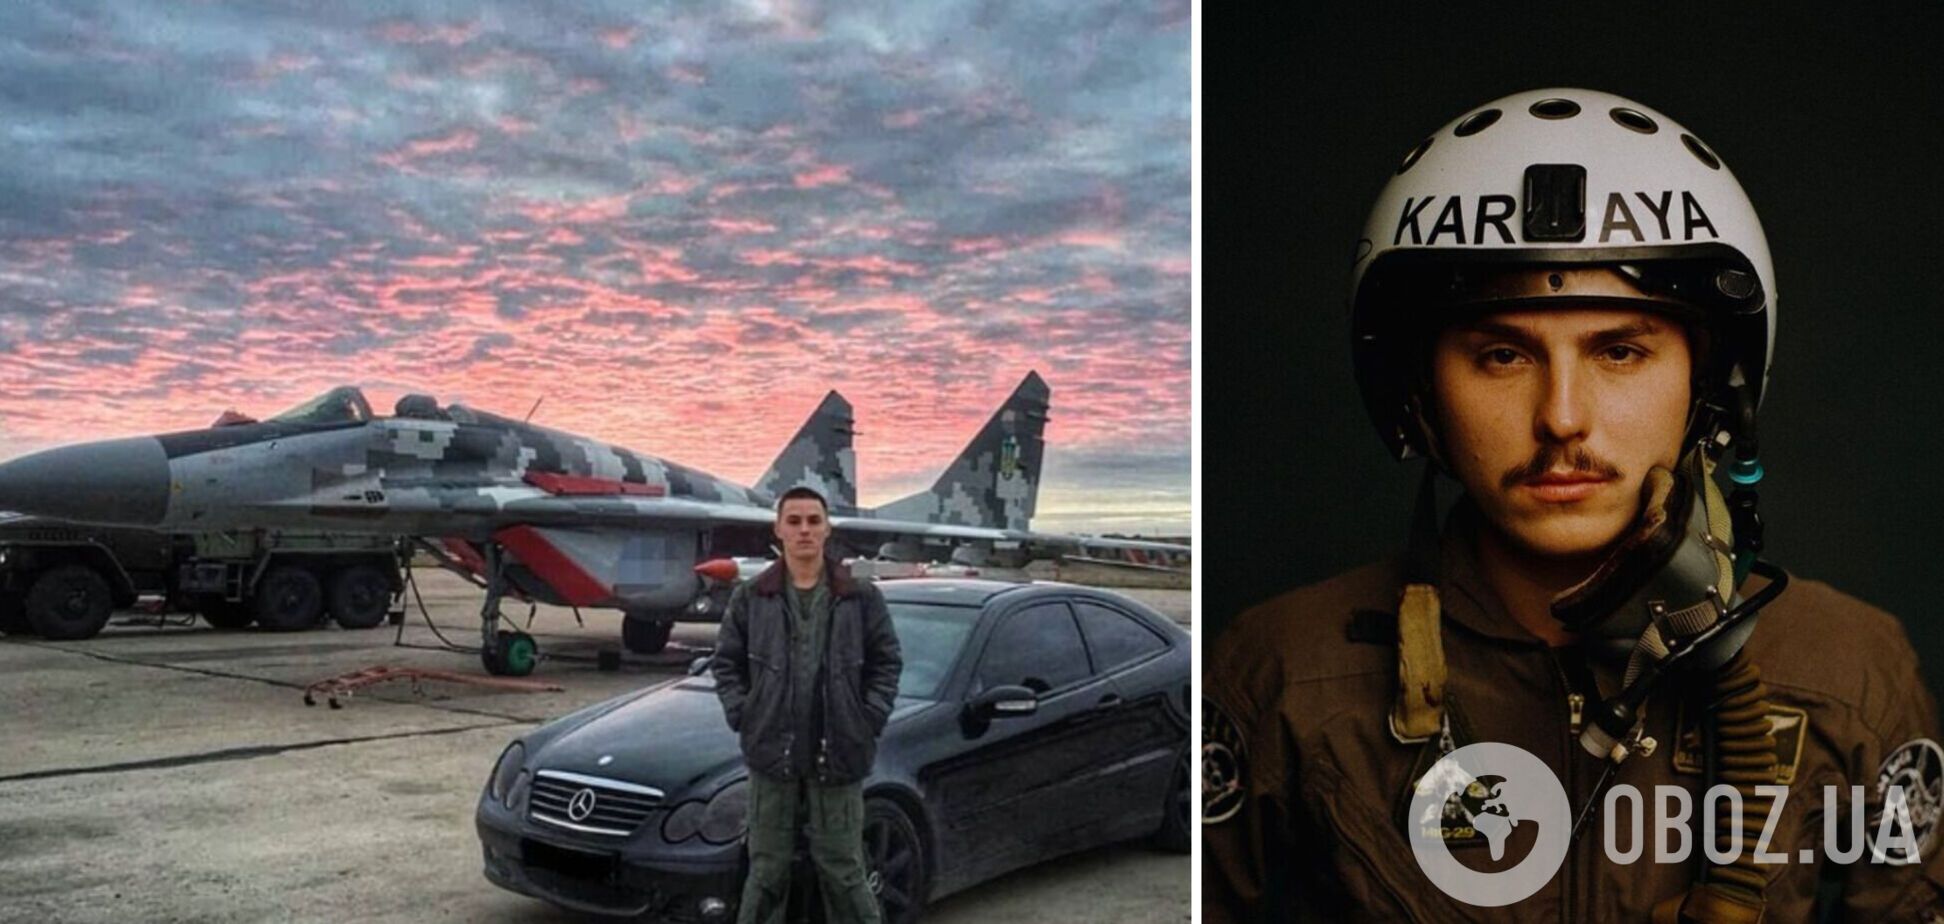 'Не верю в эту легенду': пилот Karaya разоблачил российских летчиков во лжи о бомбардировках Украины